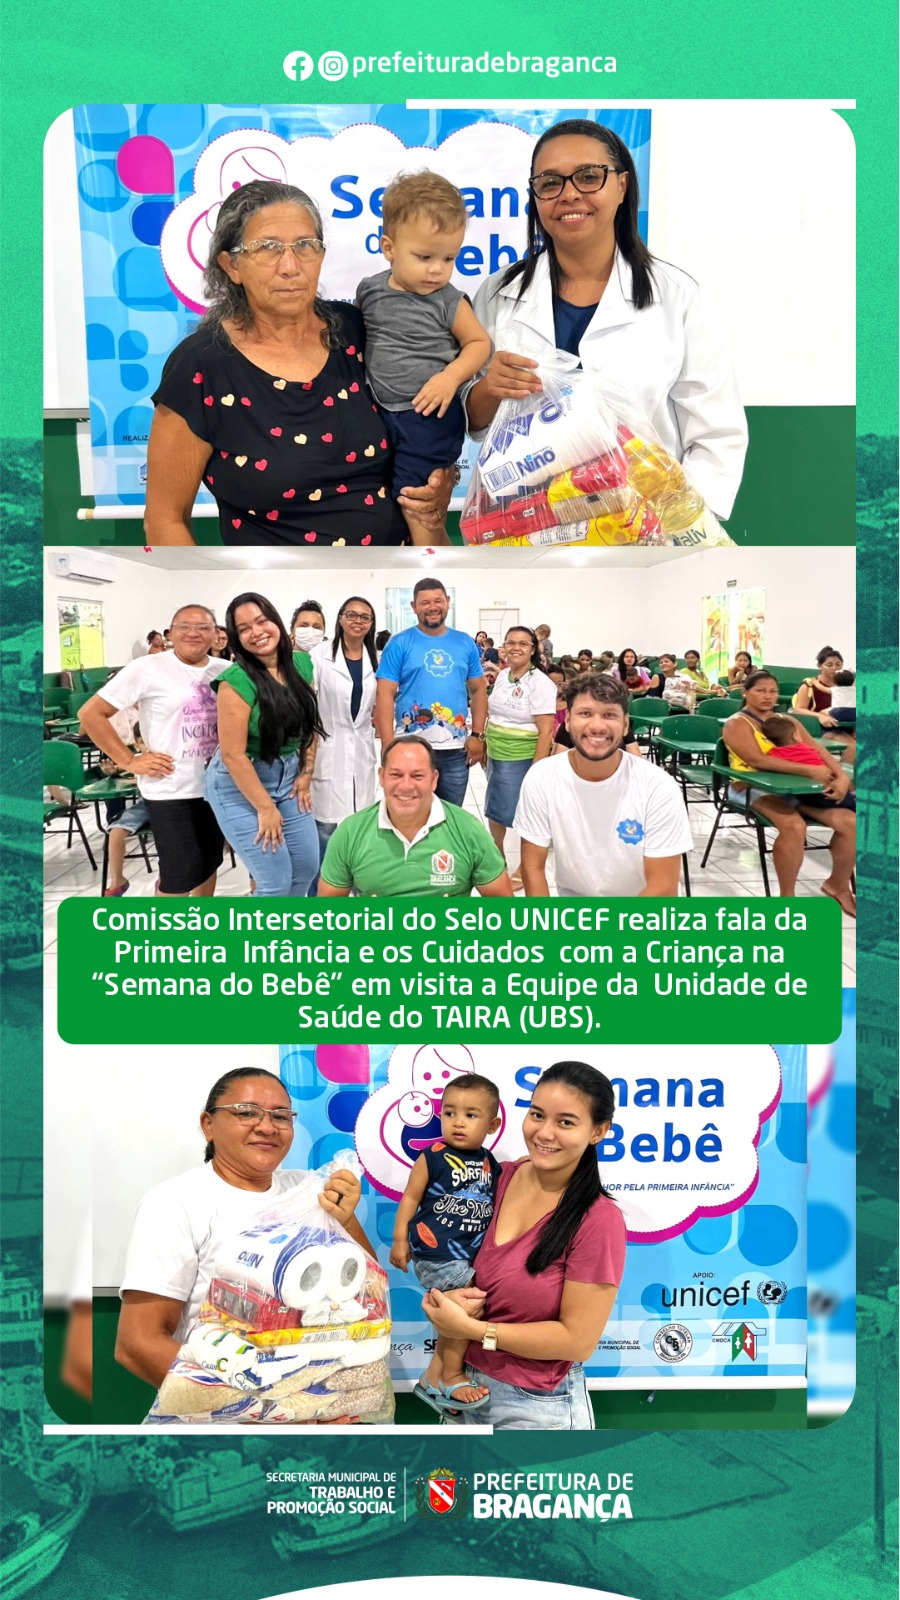 COMISSÃO INTERSETORIAL DO SELO UNICEF VISITA A EQUIPE DA UBS DO TAIRA.